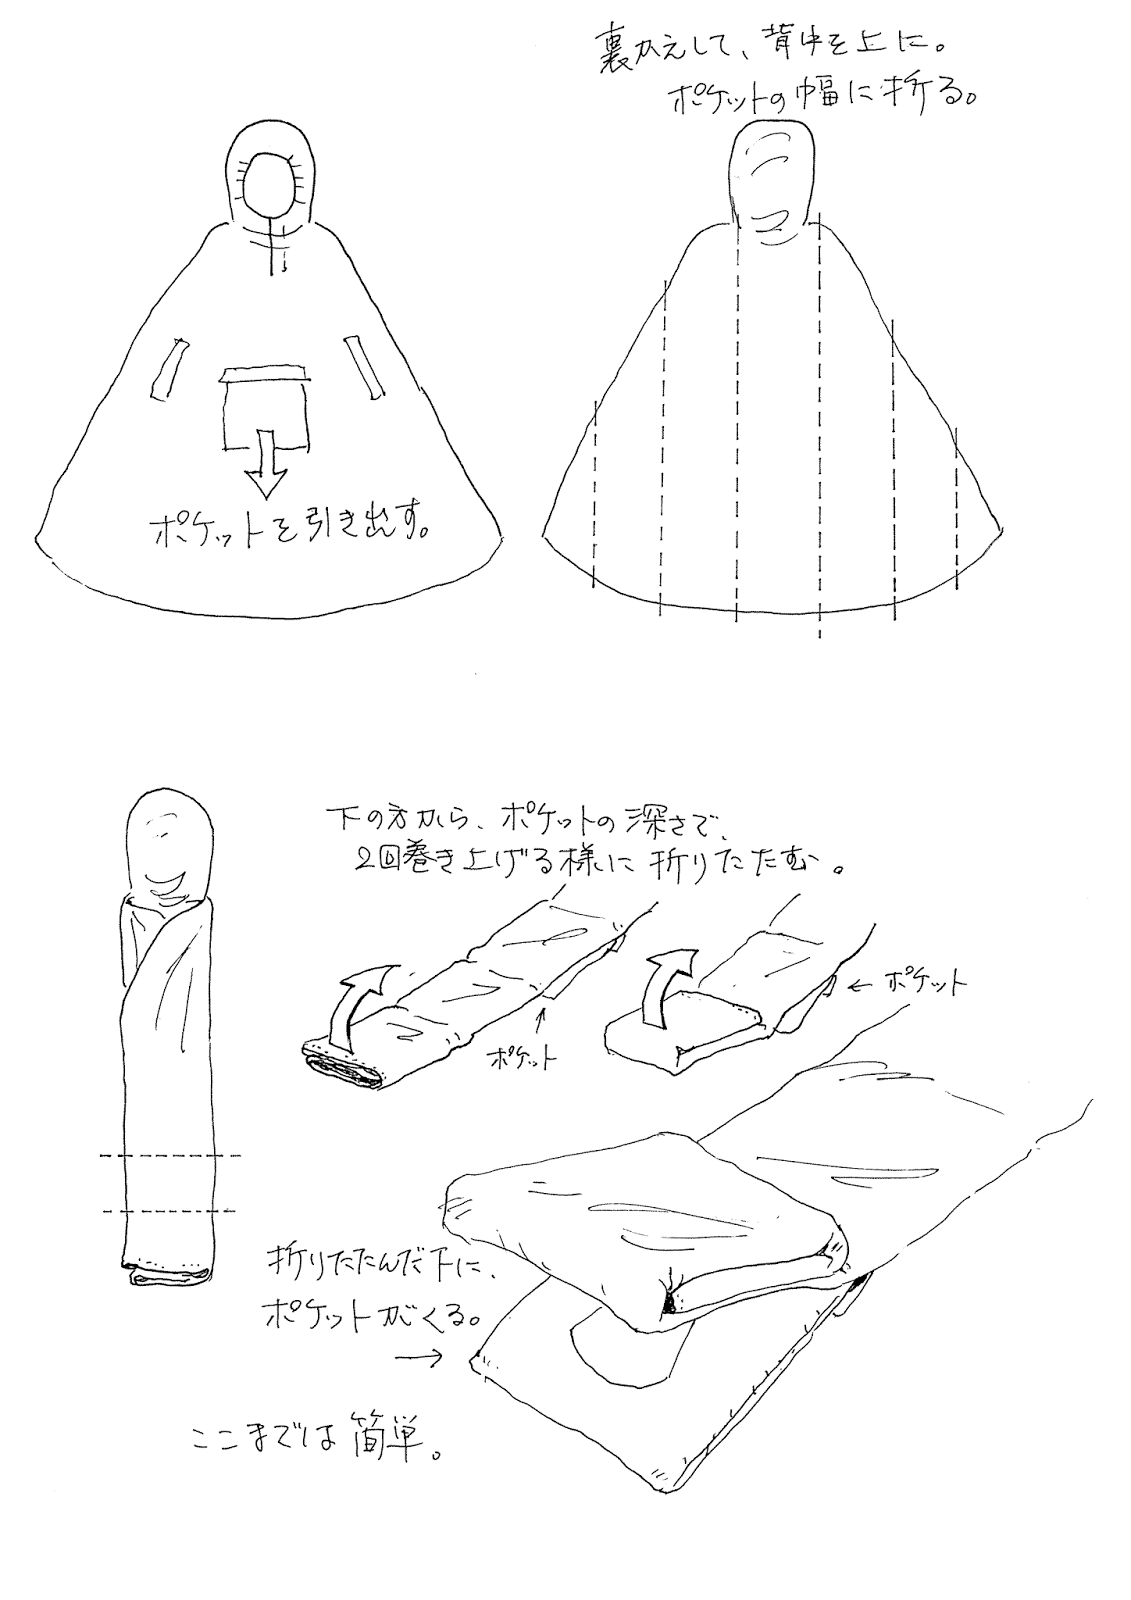 帰ってきた 無精ヒゲの一応日記 How To Fold Ikea Poncho Ikeaレインポンチョのたたみ方